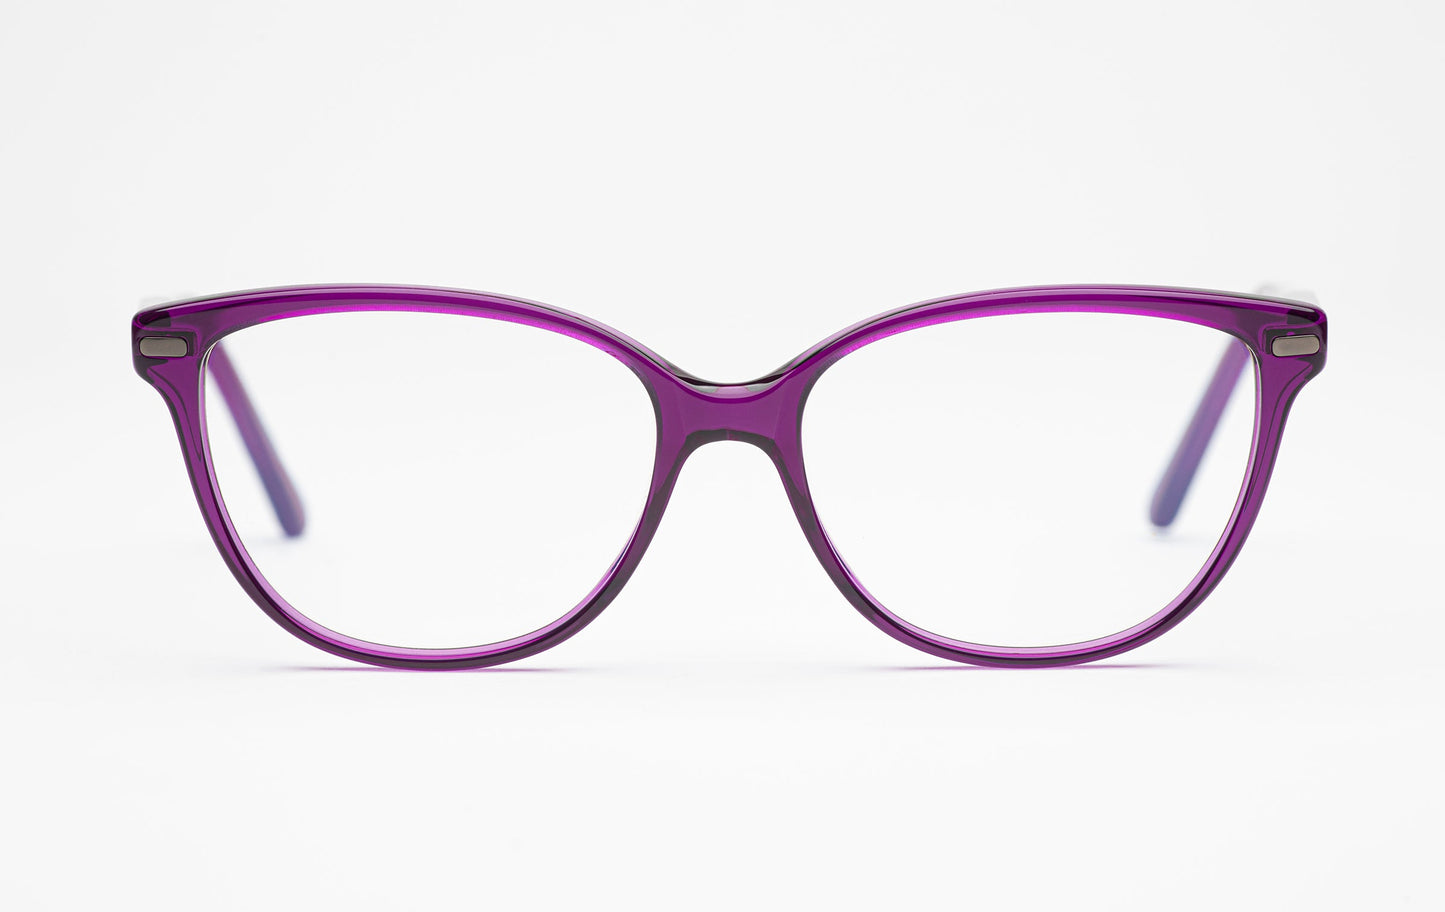 The Humanist 2 | Oval Cat Eye Glasses - Designer Prescription Eyeglasses – Purple